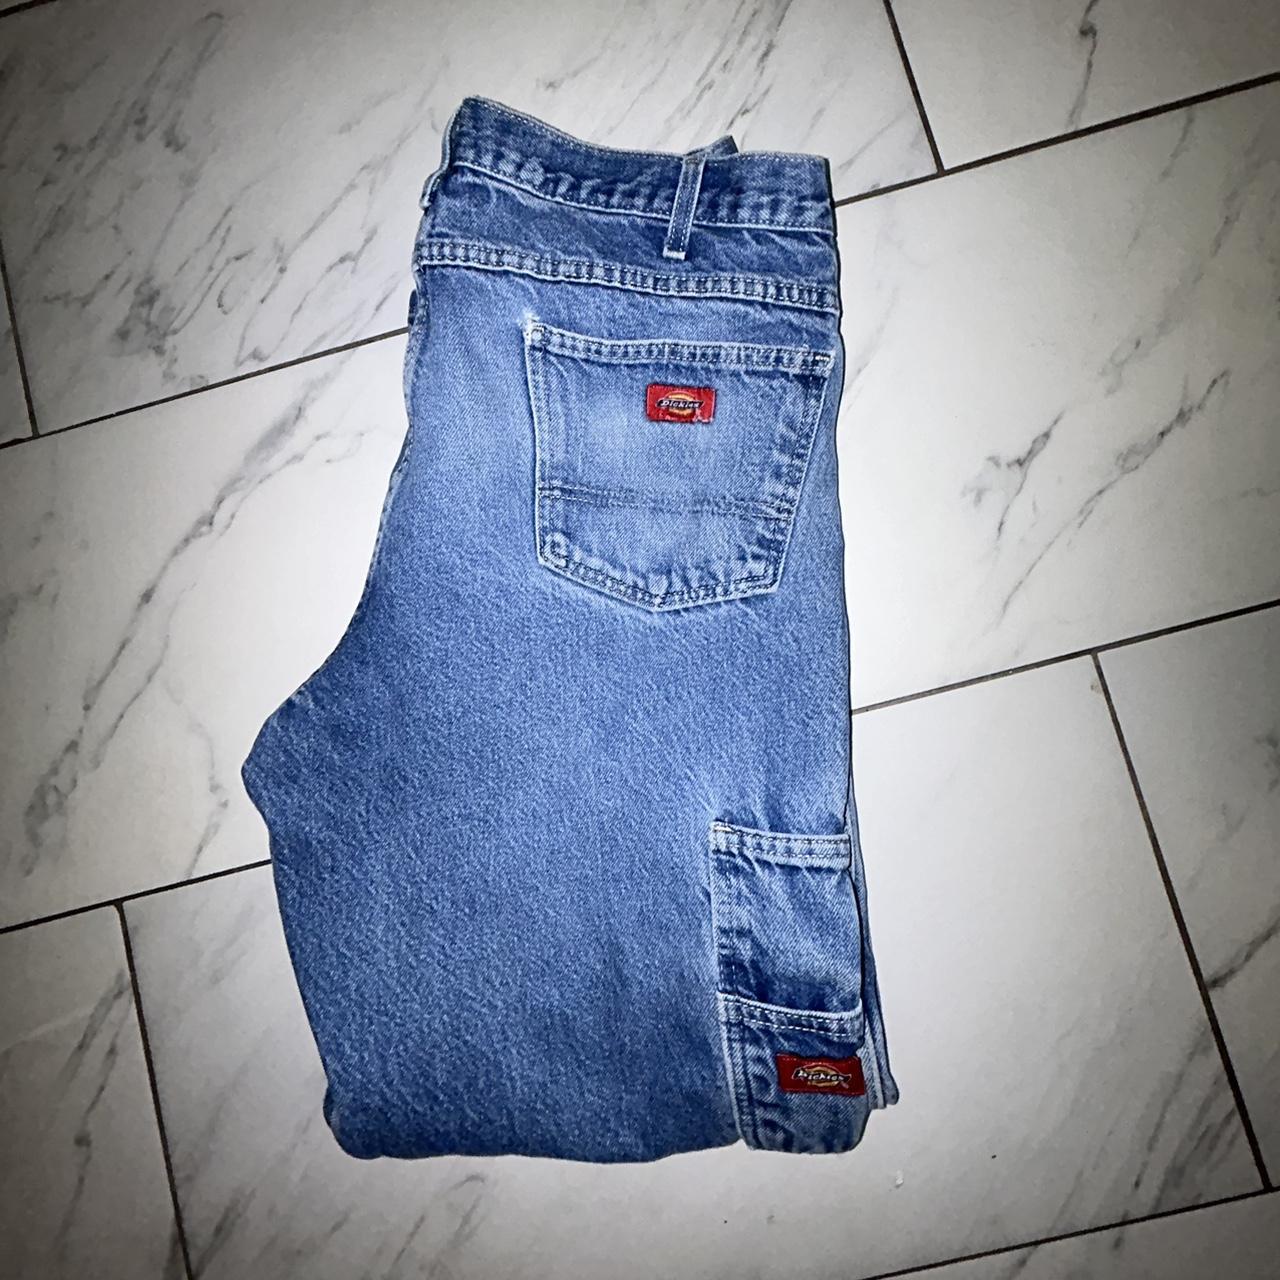 Vintage Dickie Pants Size: 36/32 (can fit... - Depop